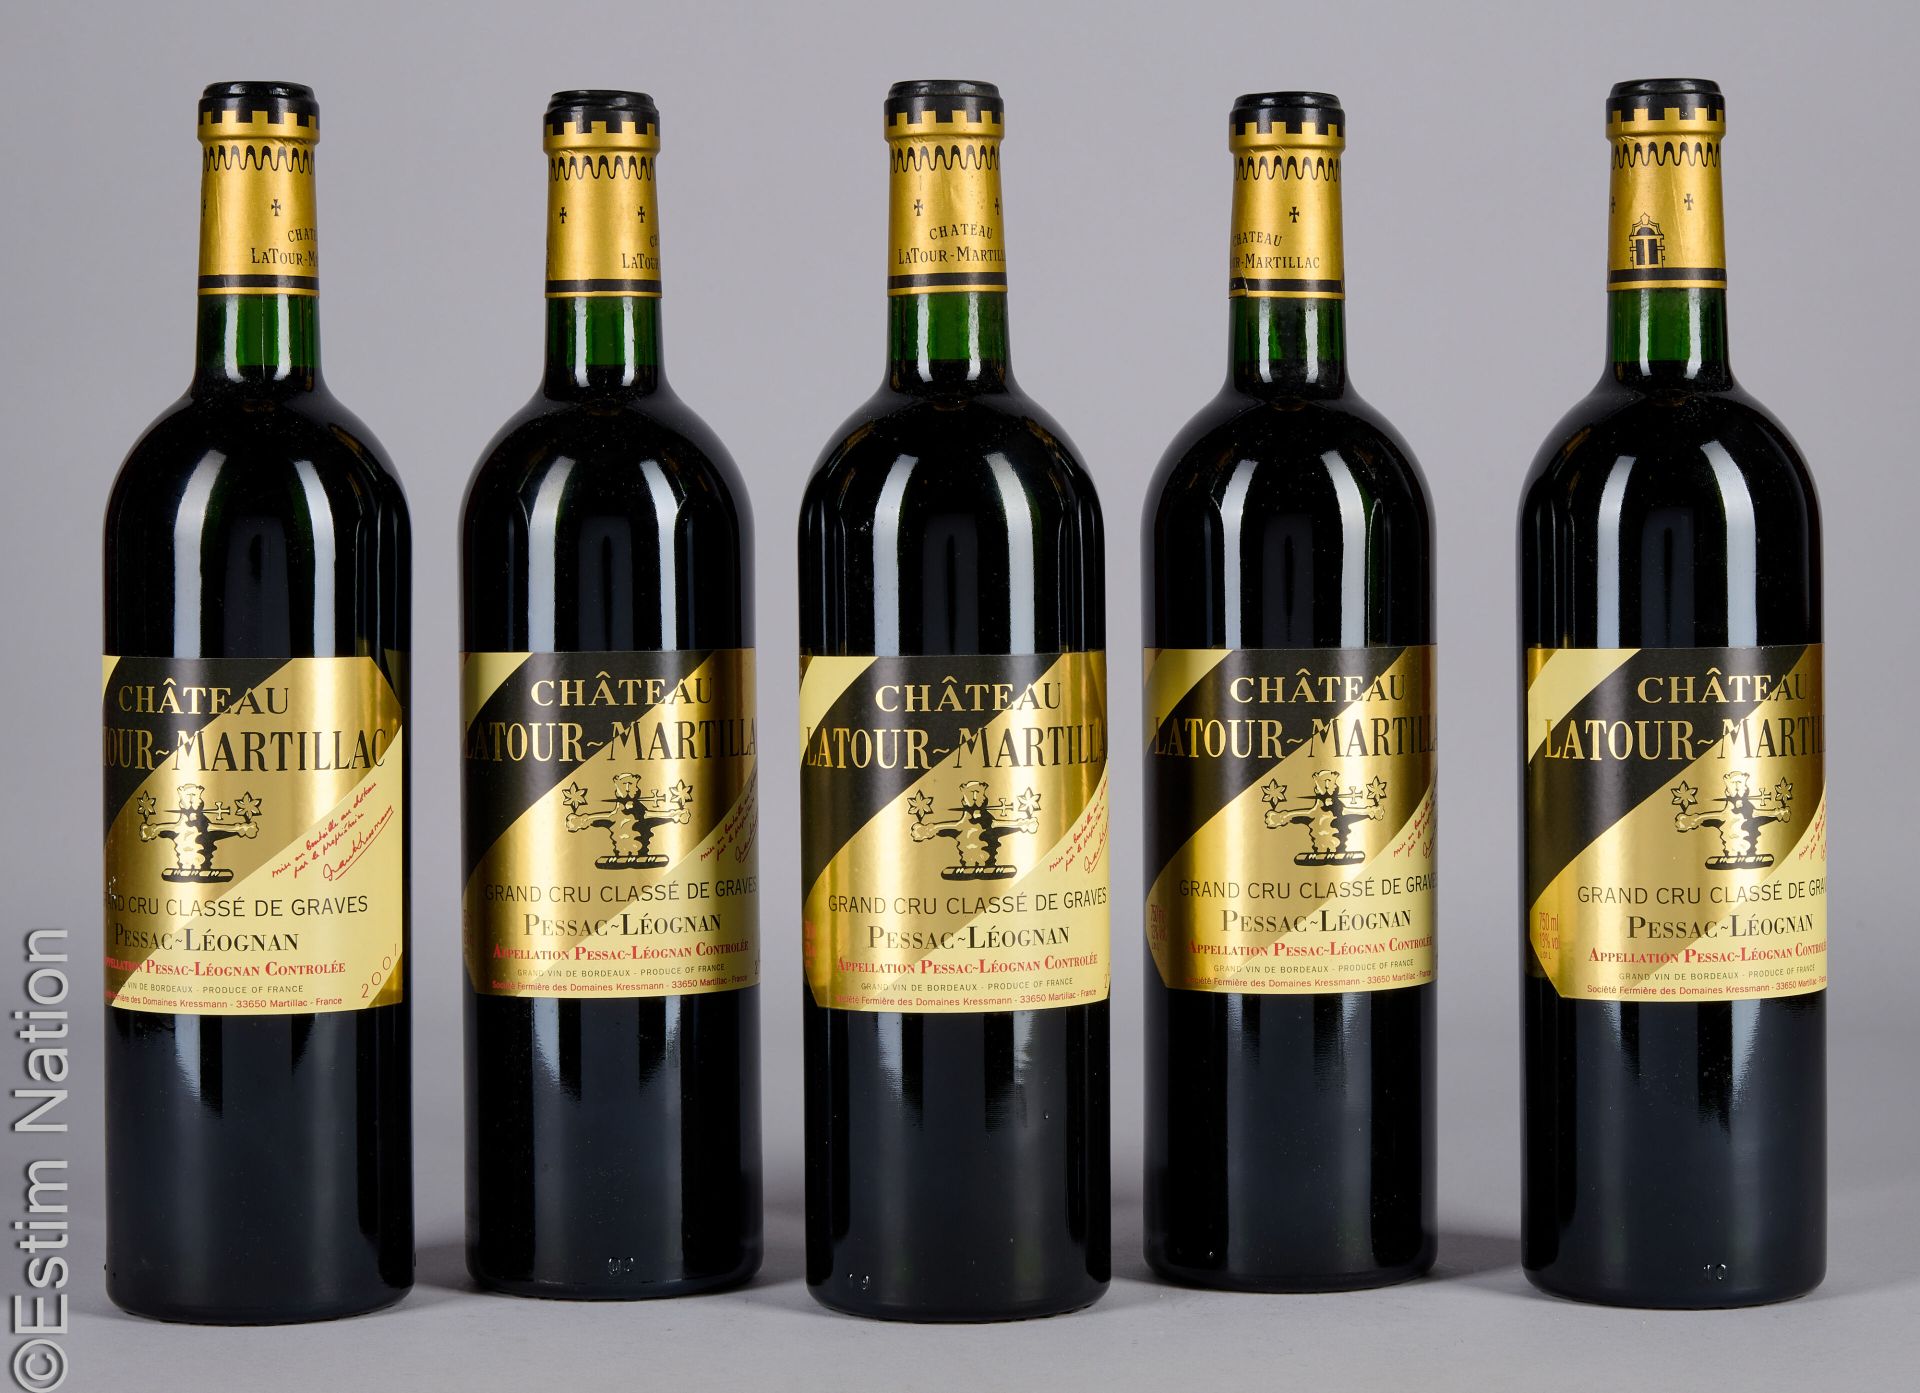 BORDEAUX 5 瓶 拉图玛蒂亚克酒庄 2001 CC 佩萨克-雷奥良葡萄酒
(N. Tlb, E. F, tla)